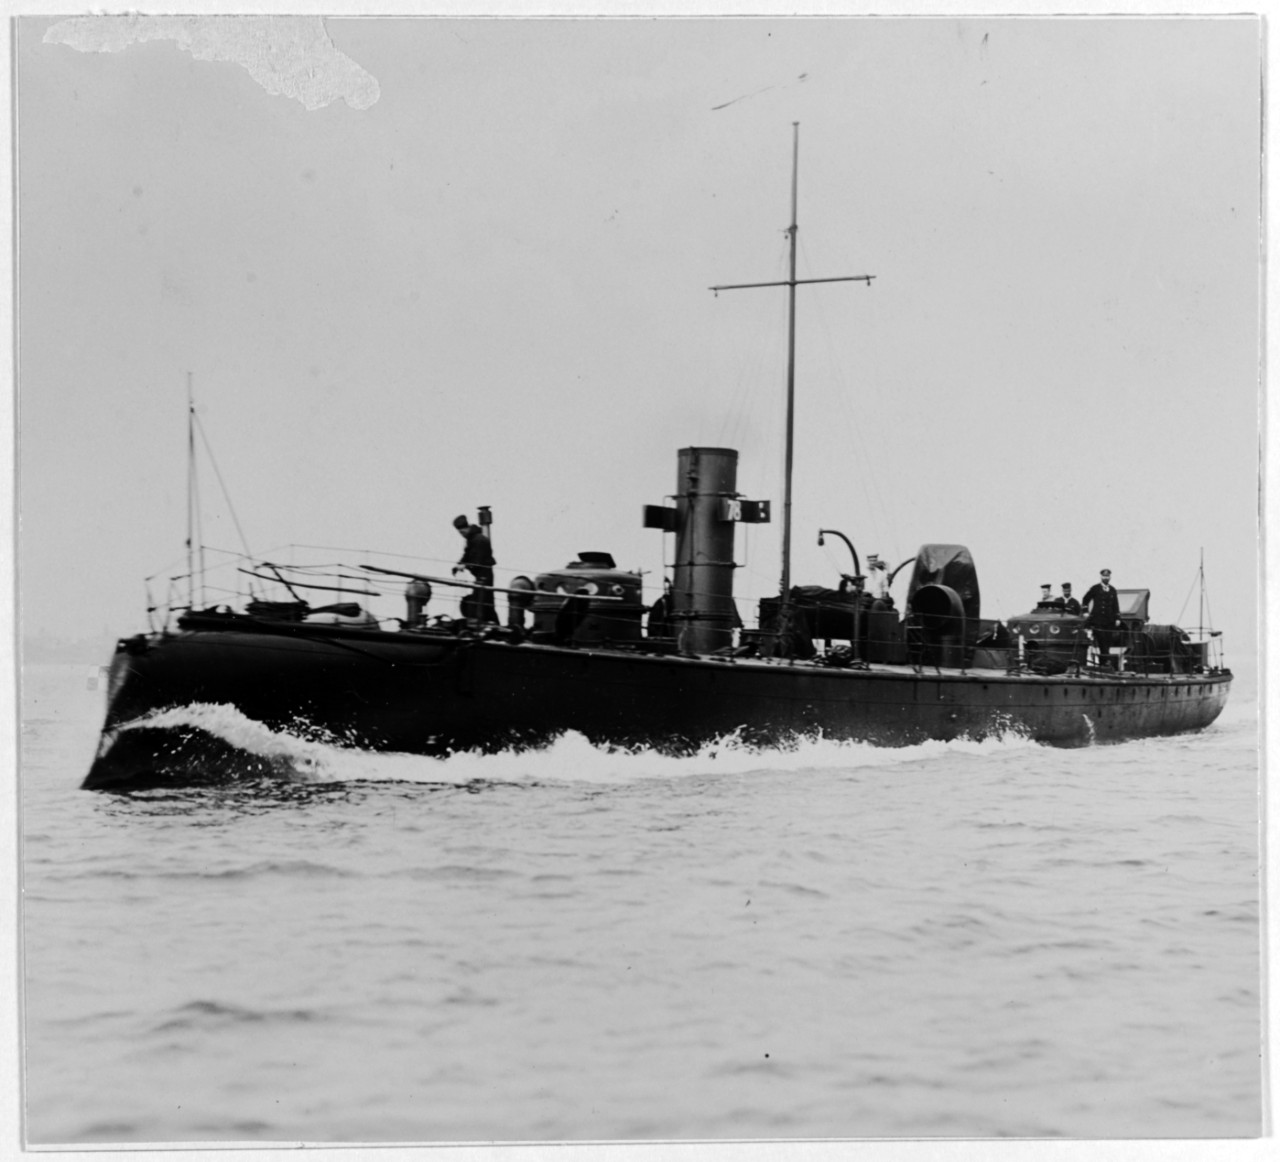 No. 78 (British Torpedo Boat, 1887-1920)